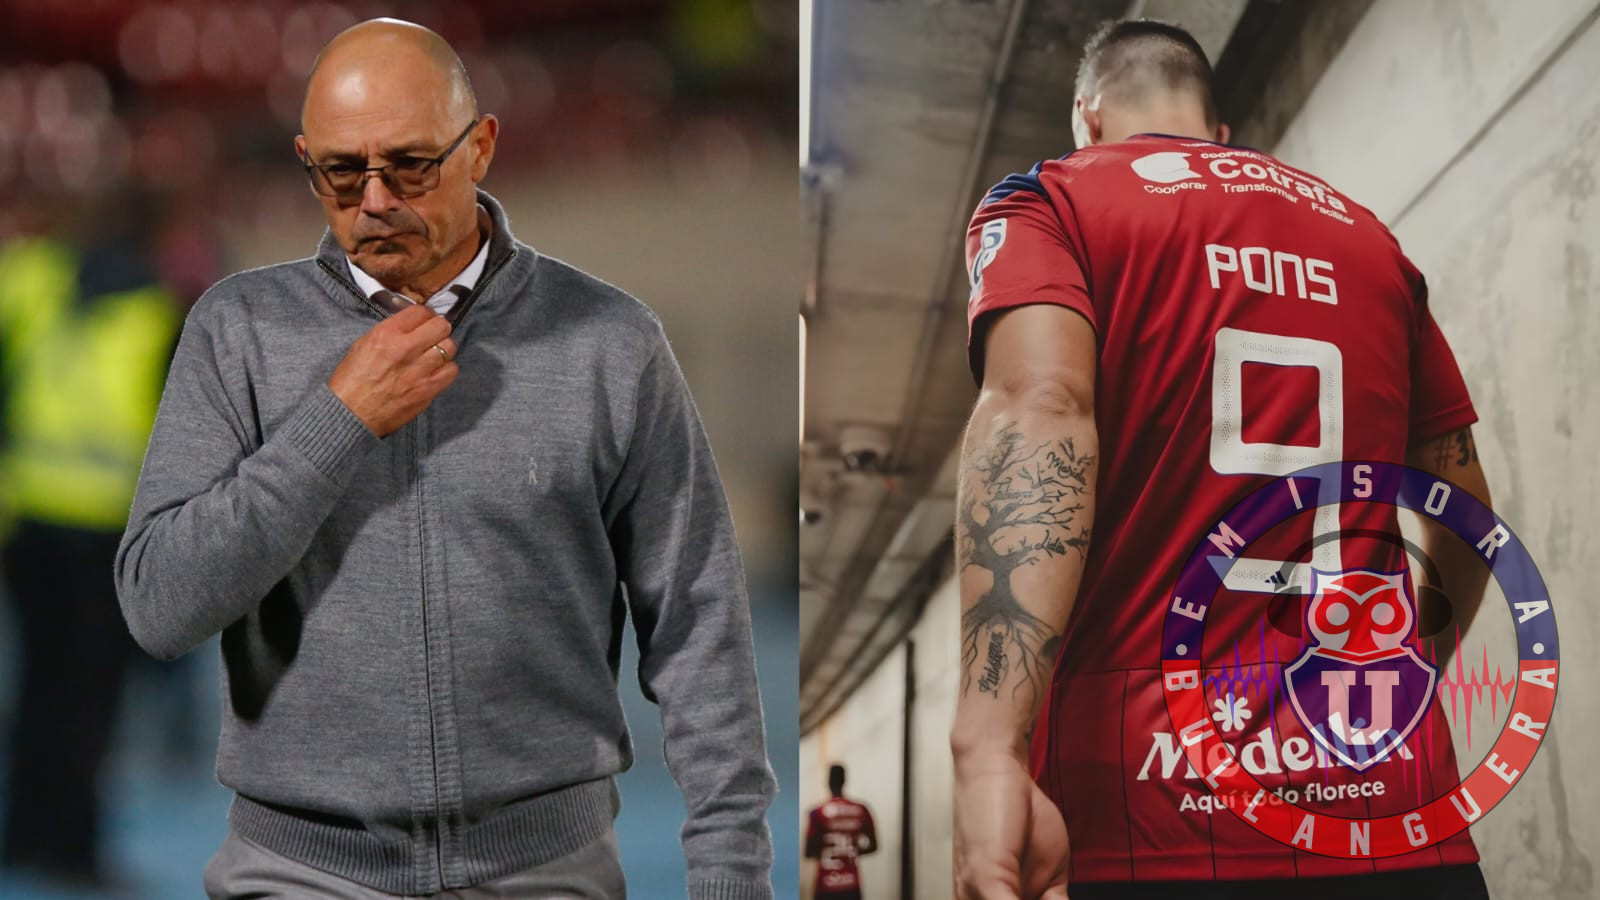 Alfredo Arias se toma la cabeza tras la partida de Luciano Pons: “Nuestro equipo pierde un líder”